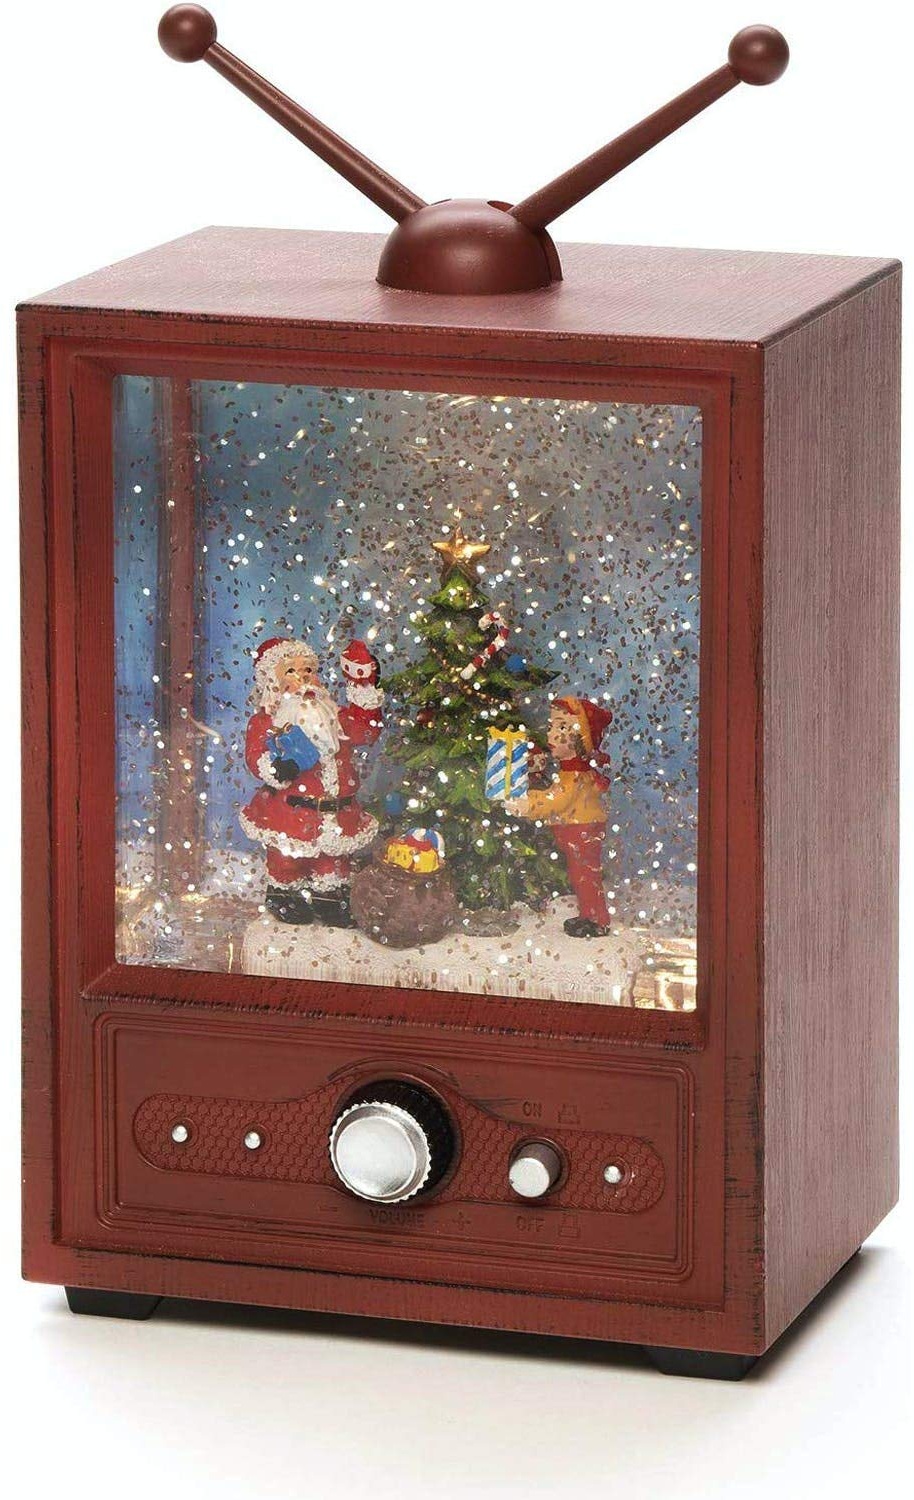 Konstsmide 4372-000 Fernseher mit Weihnachtsmann und Kind Warmweiß LED Bunt waehlbare Energieversor